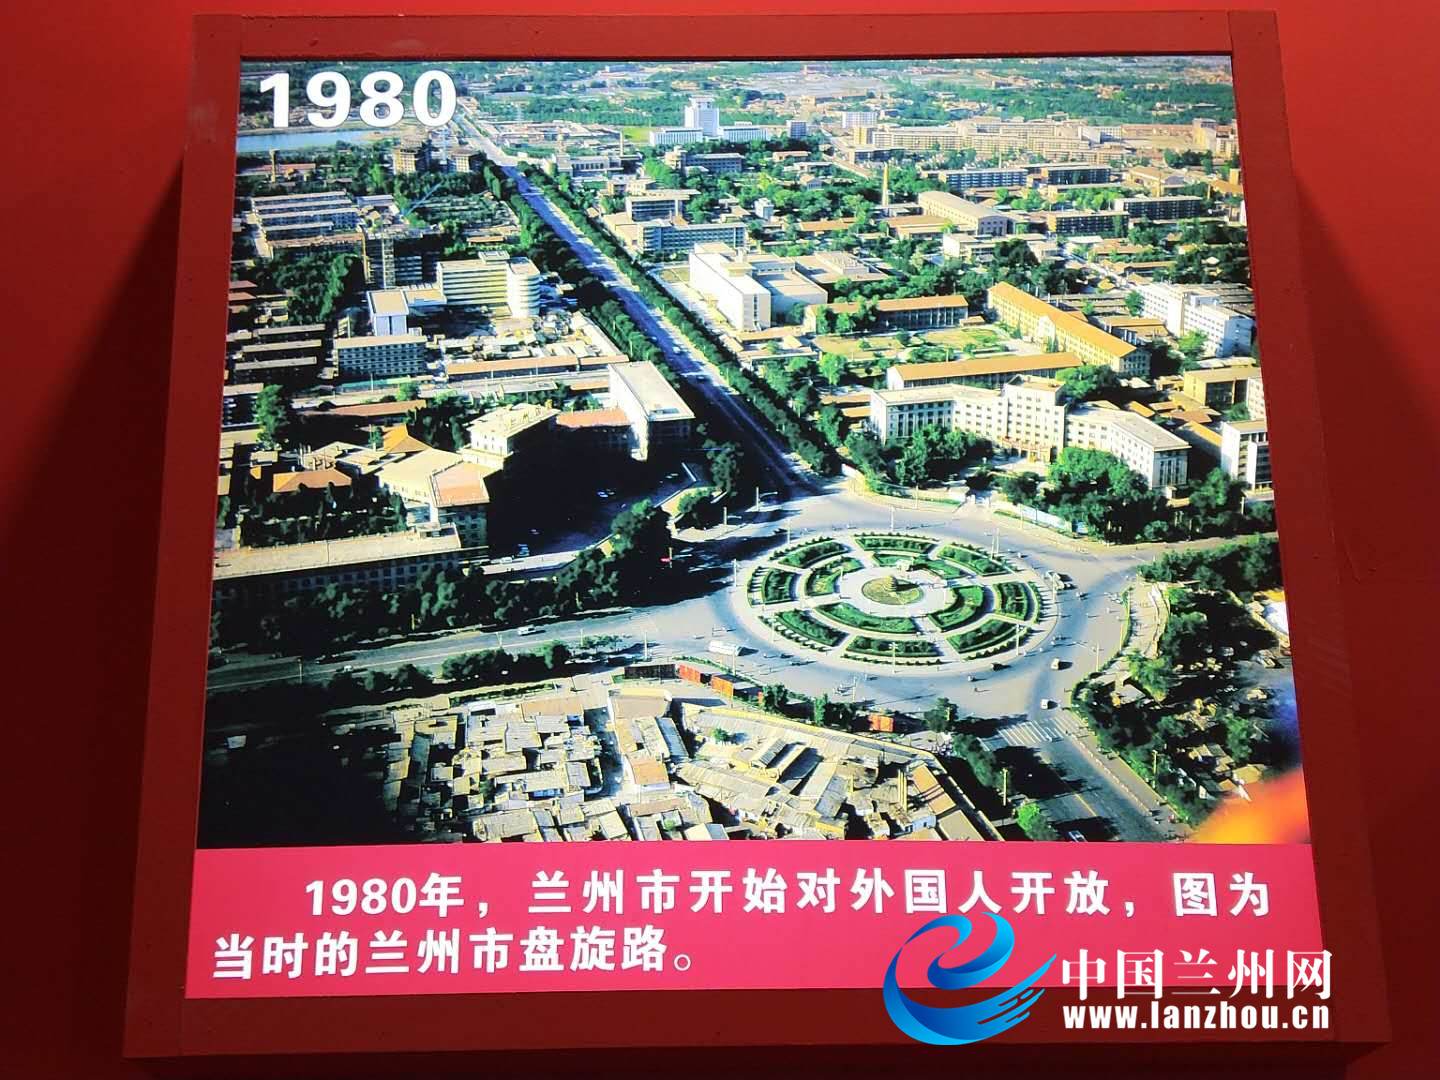 影像记录时代变迁 甘肃省庆祝改革开放40周年图片展开幕